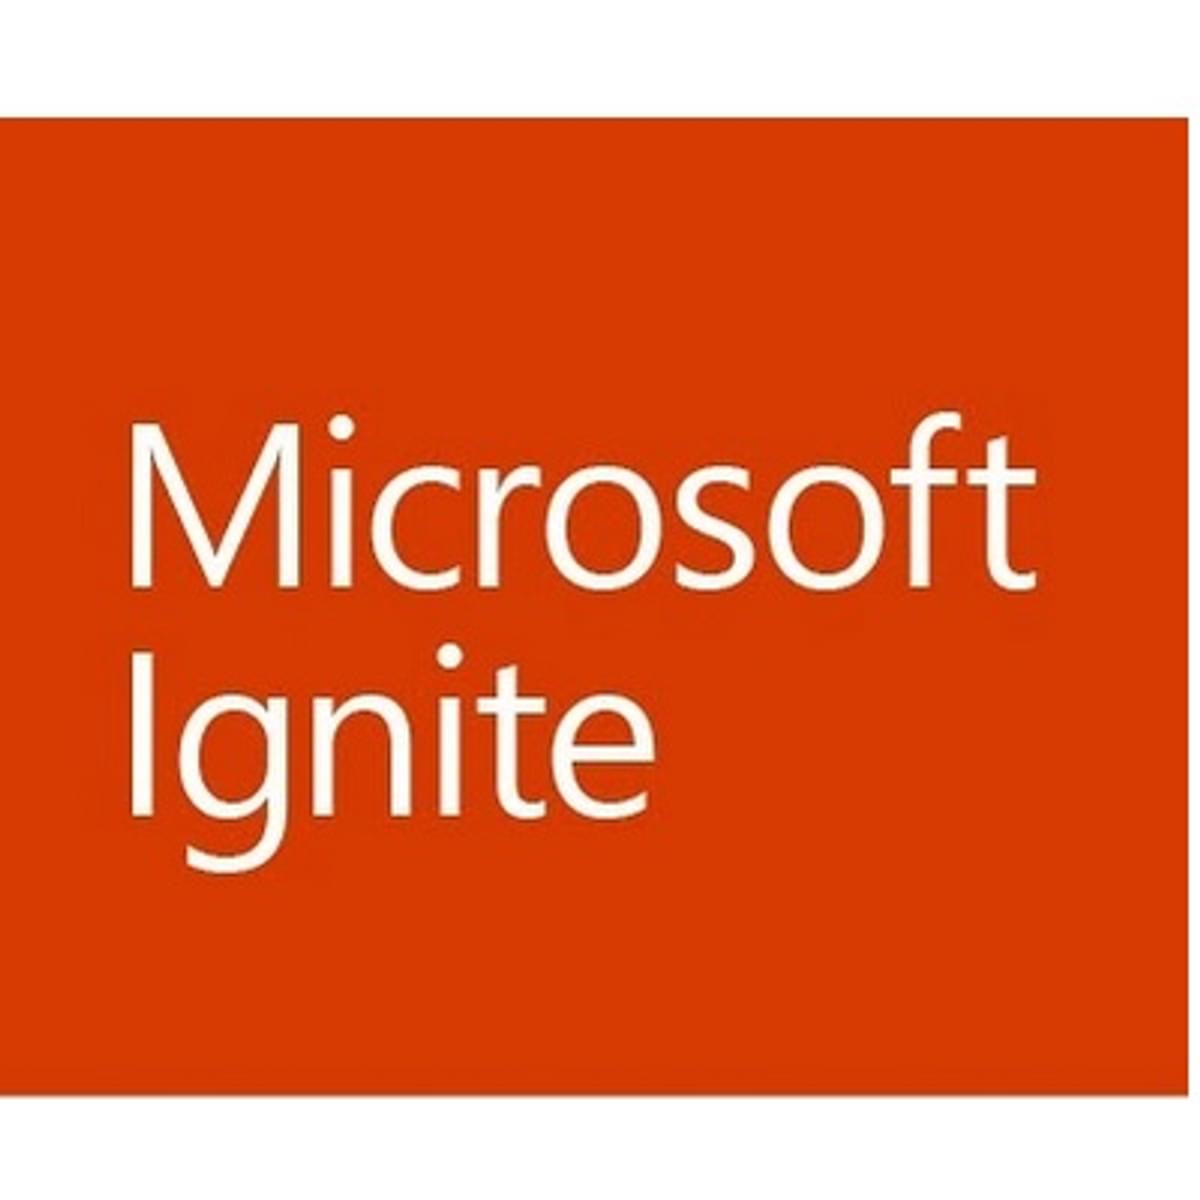 Microsoft Azure infrastructuur services aanzienlijk uitgebreid image